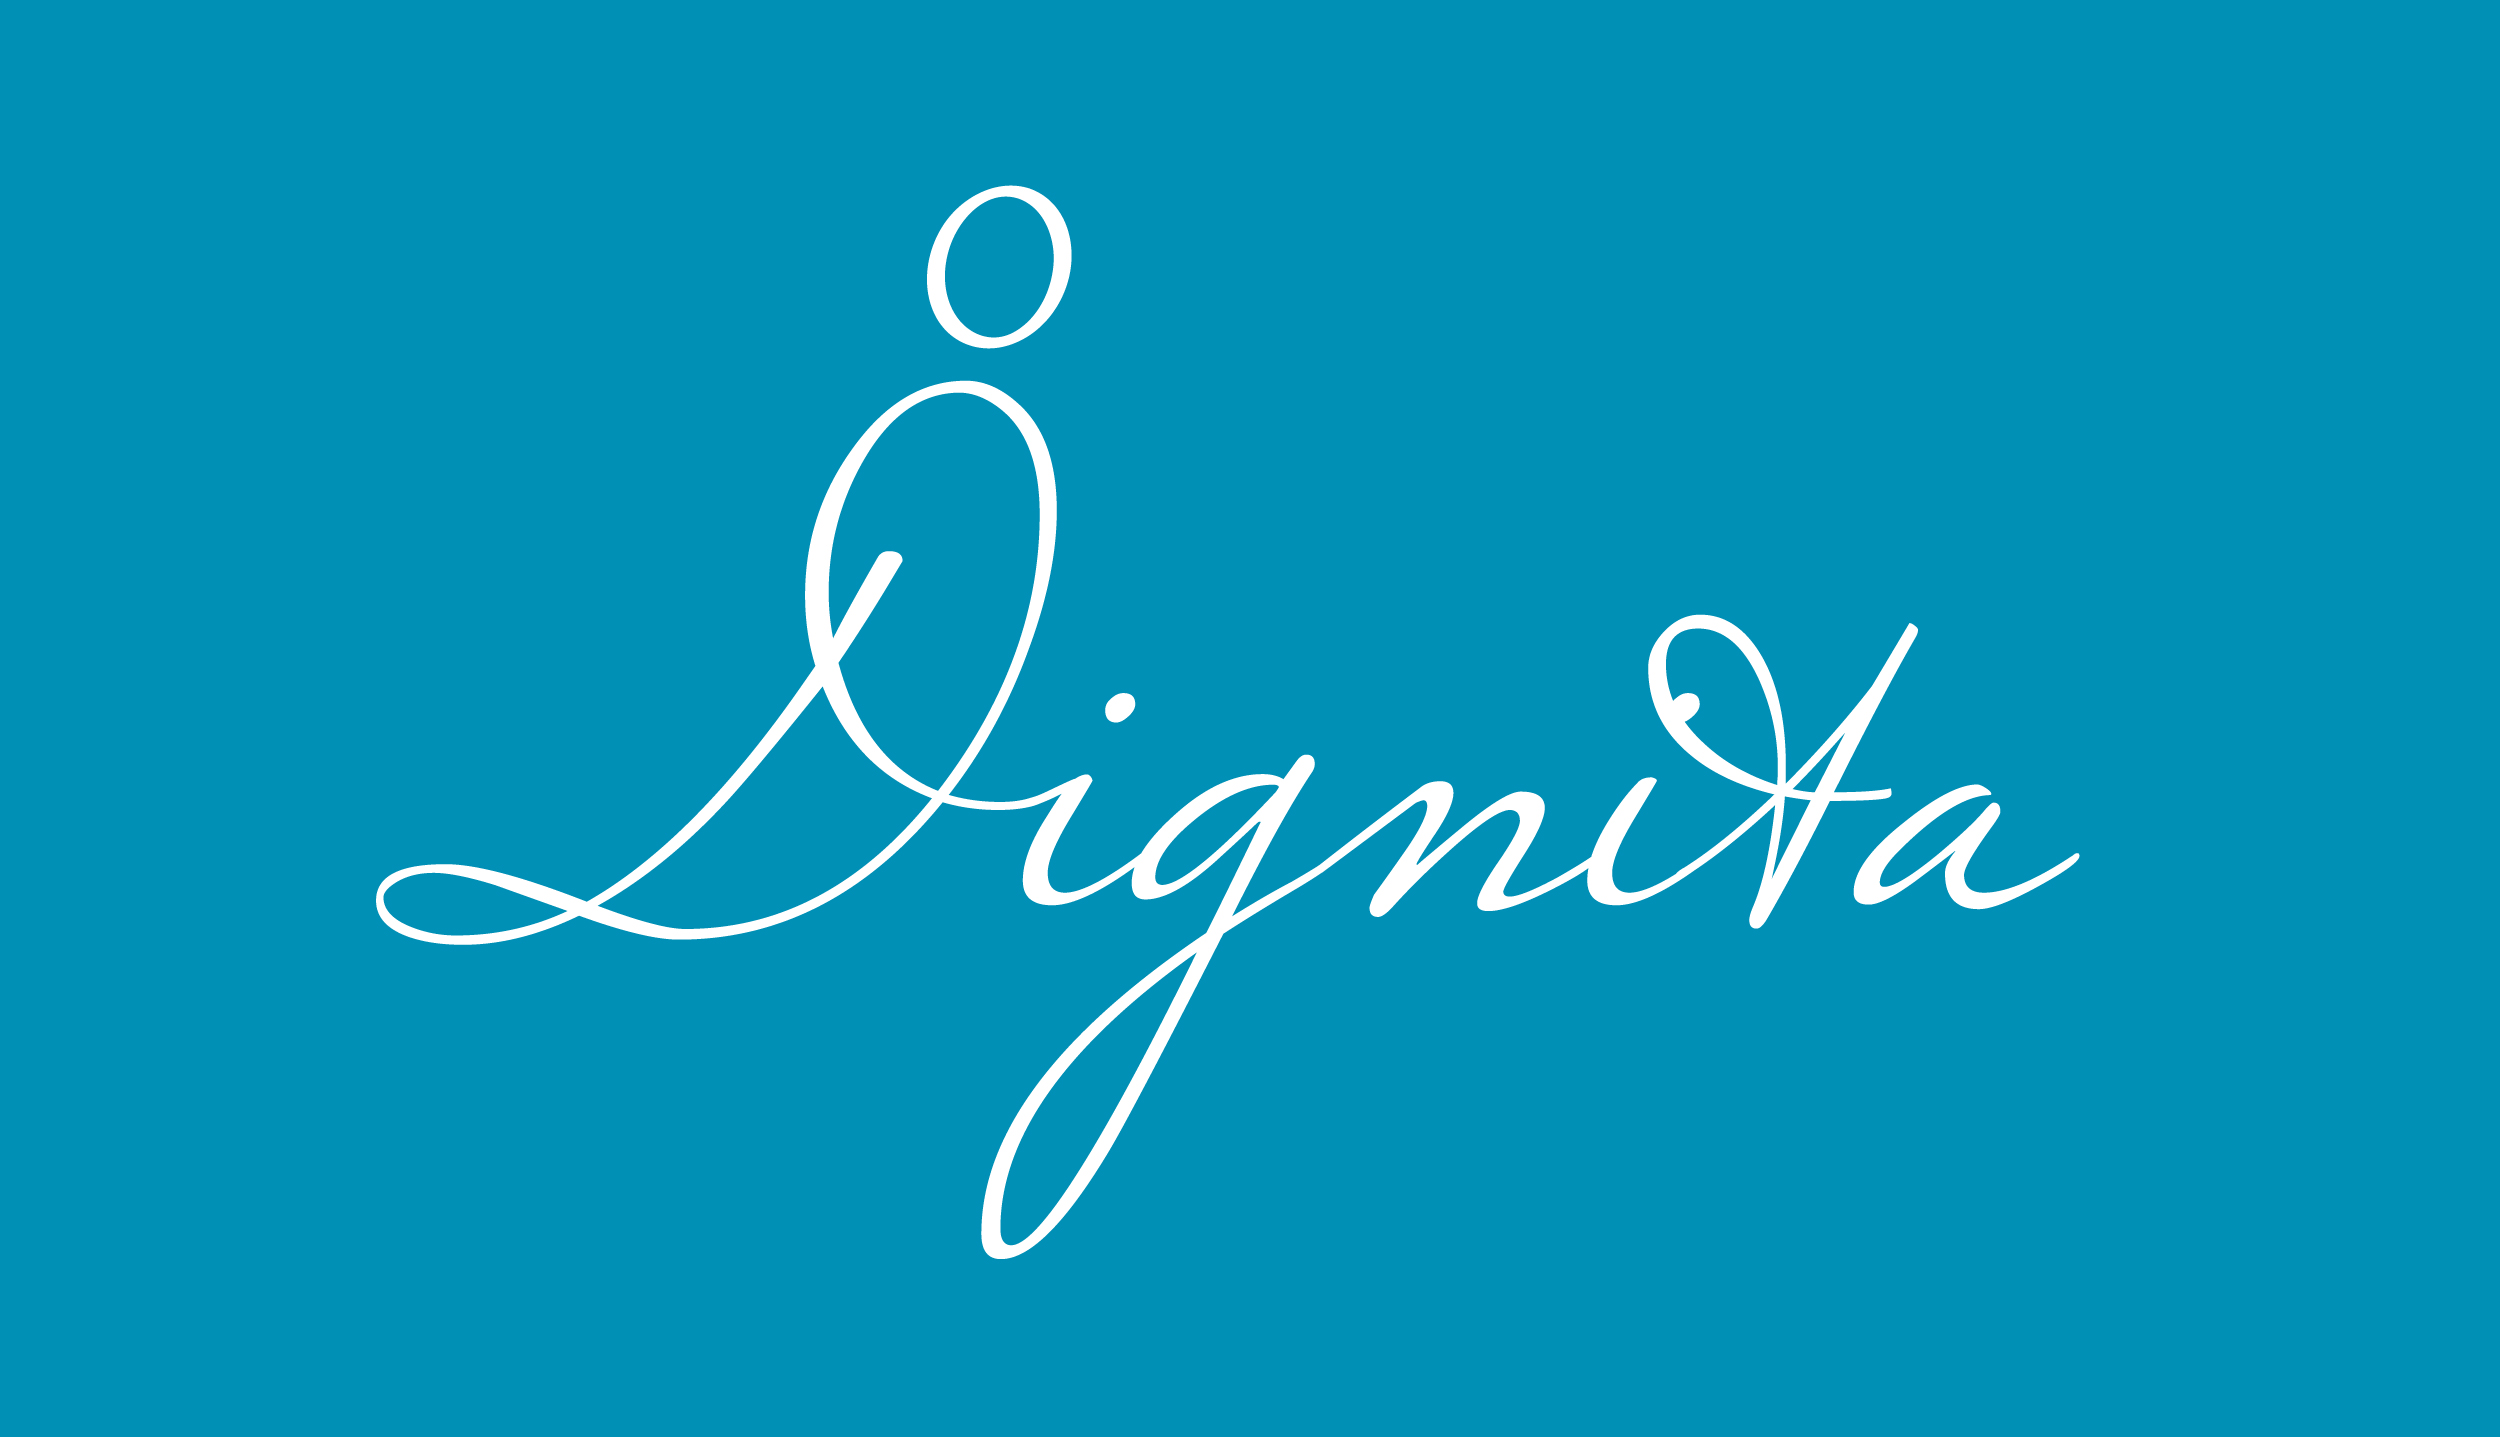 232-dignita-logo-eng-on-blue-16026683650997.jpg